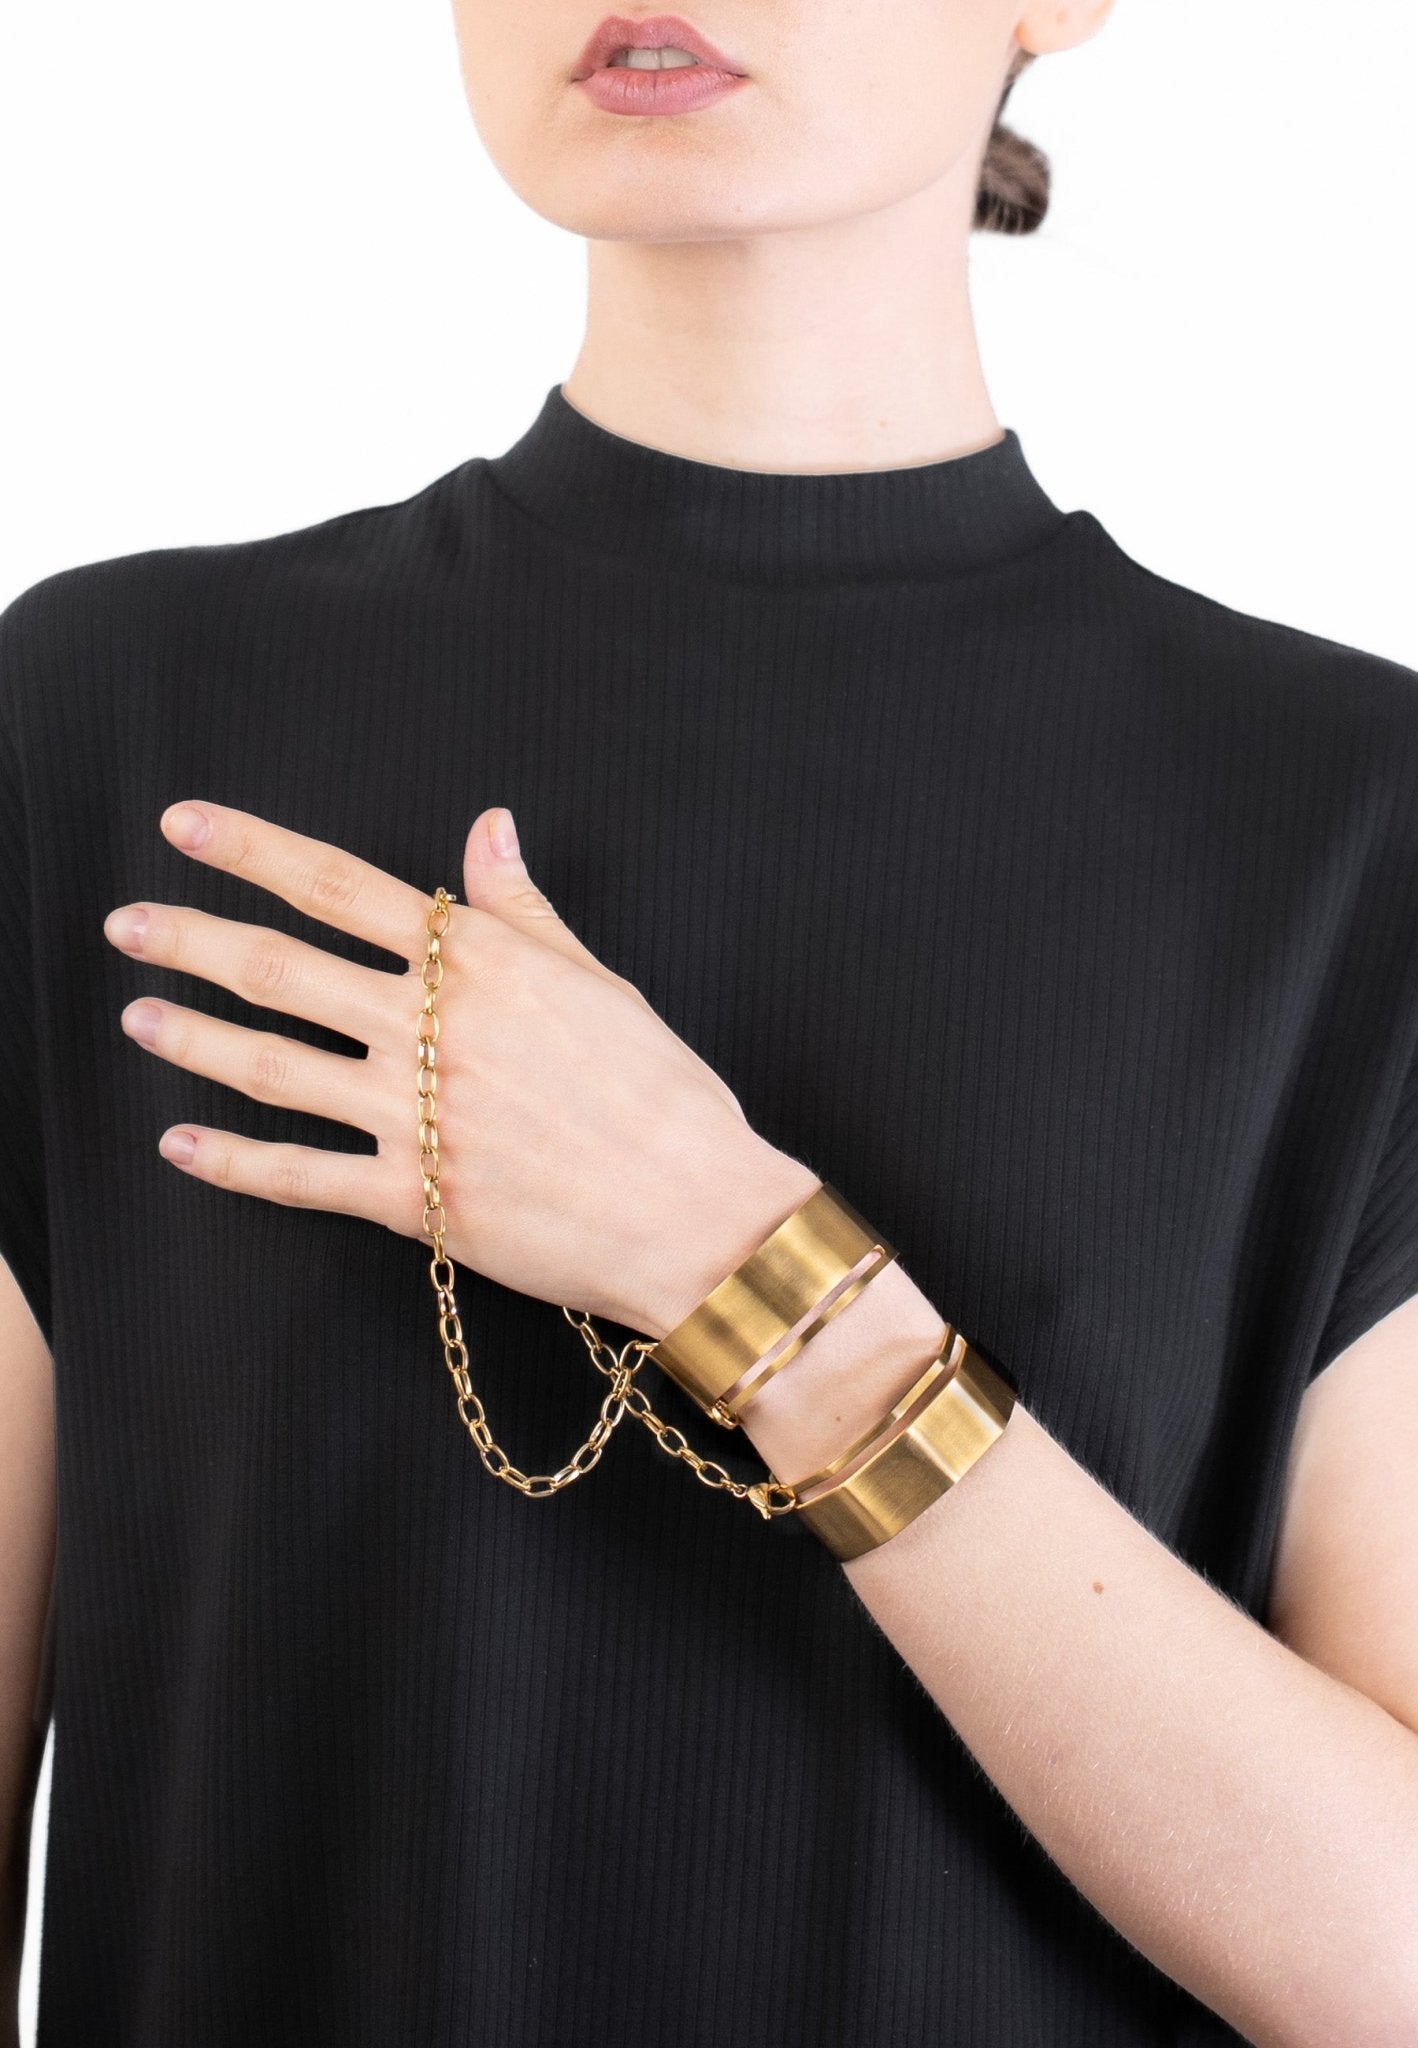 Open Cuff Bracelet Set with Chain "Handcuff Bracelets" - MYL BERLIN - 4260654110265 - 4260654110265